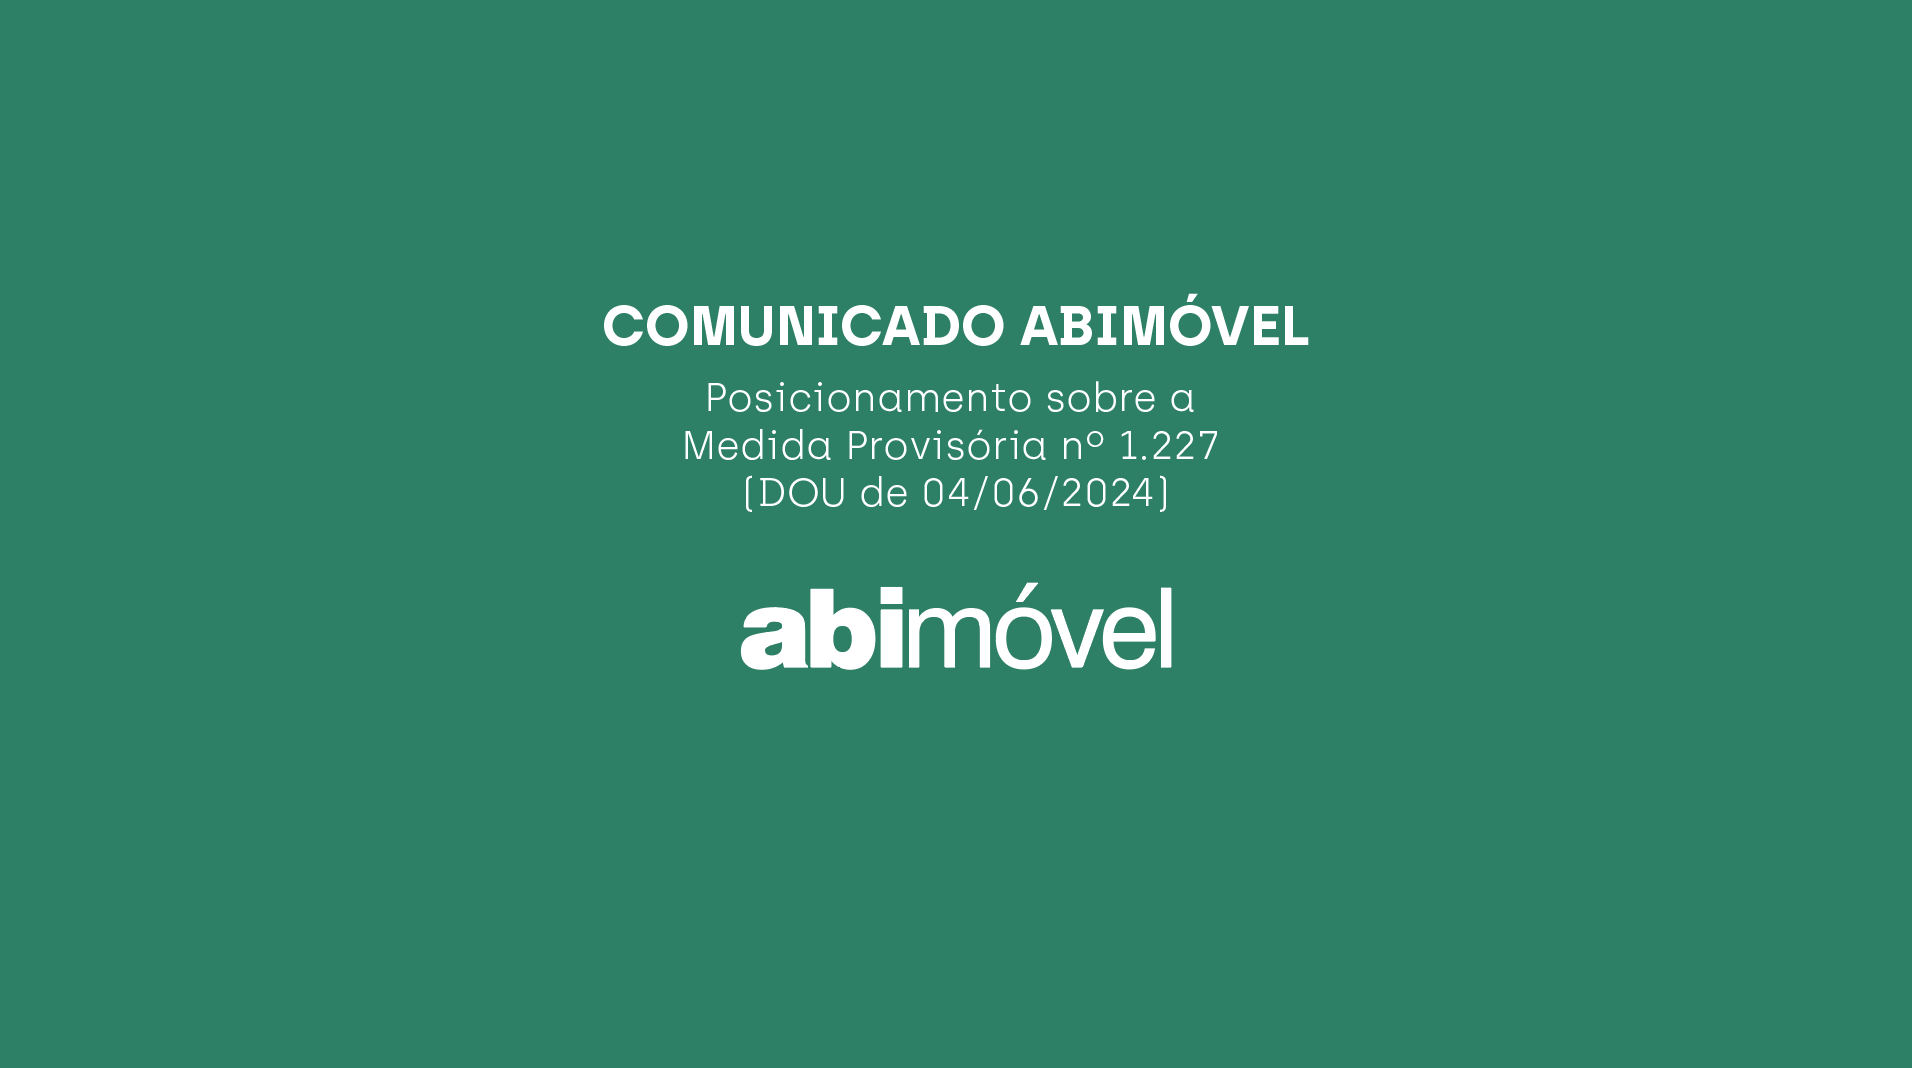 COMUNICADO ABIMÓVEL – Posicionamento sobre a Medida Provisória nº 1.227 (DOU de 04/06/2024)